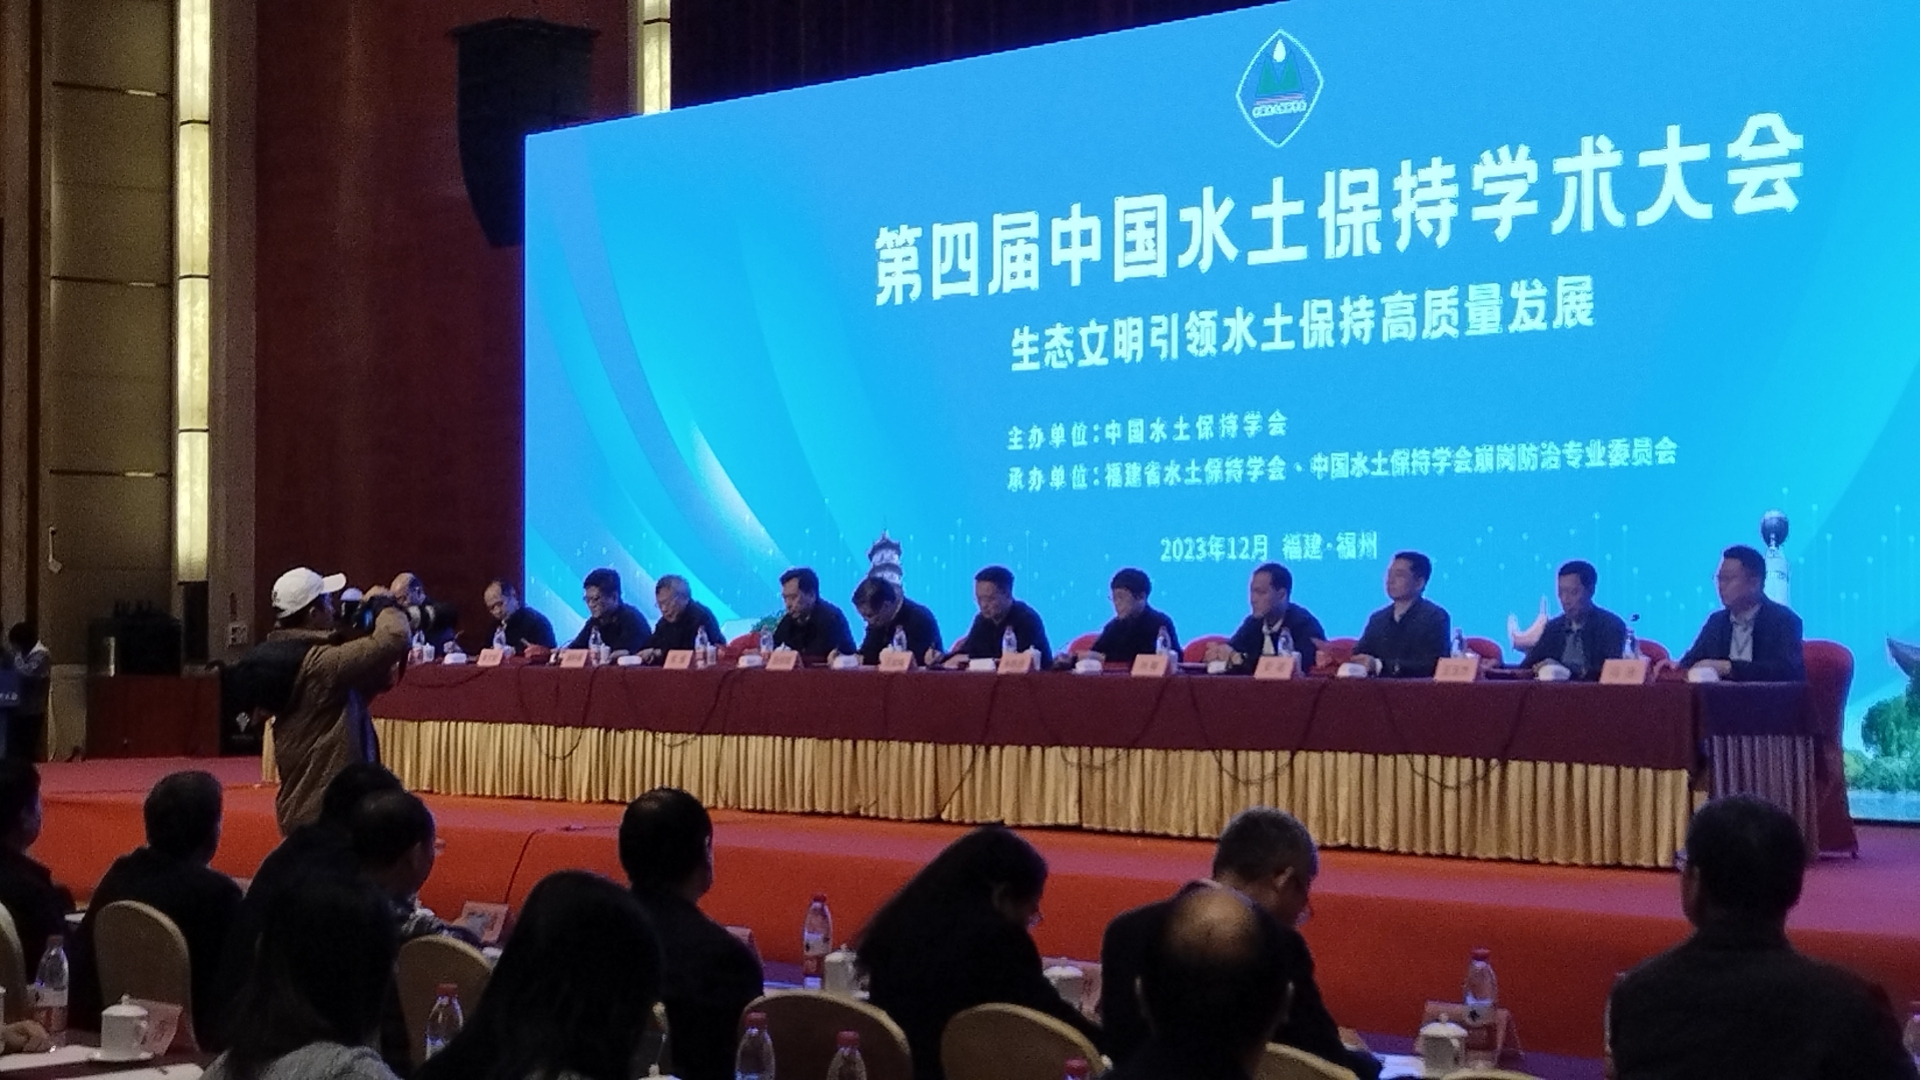 第四届中国水土保持学术大会召开一一必赢国际437官网于会作大型蒸渗仪技术汇报